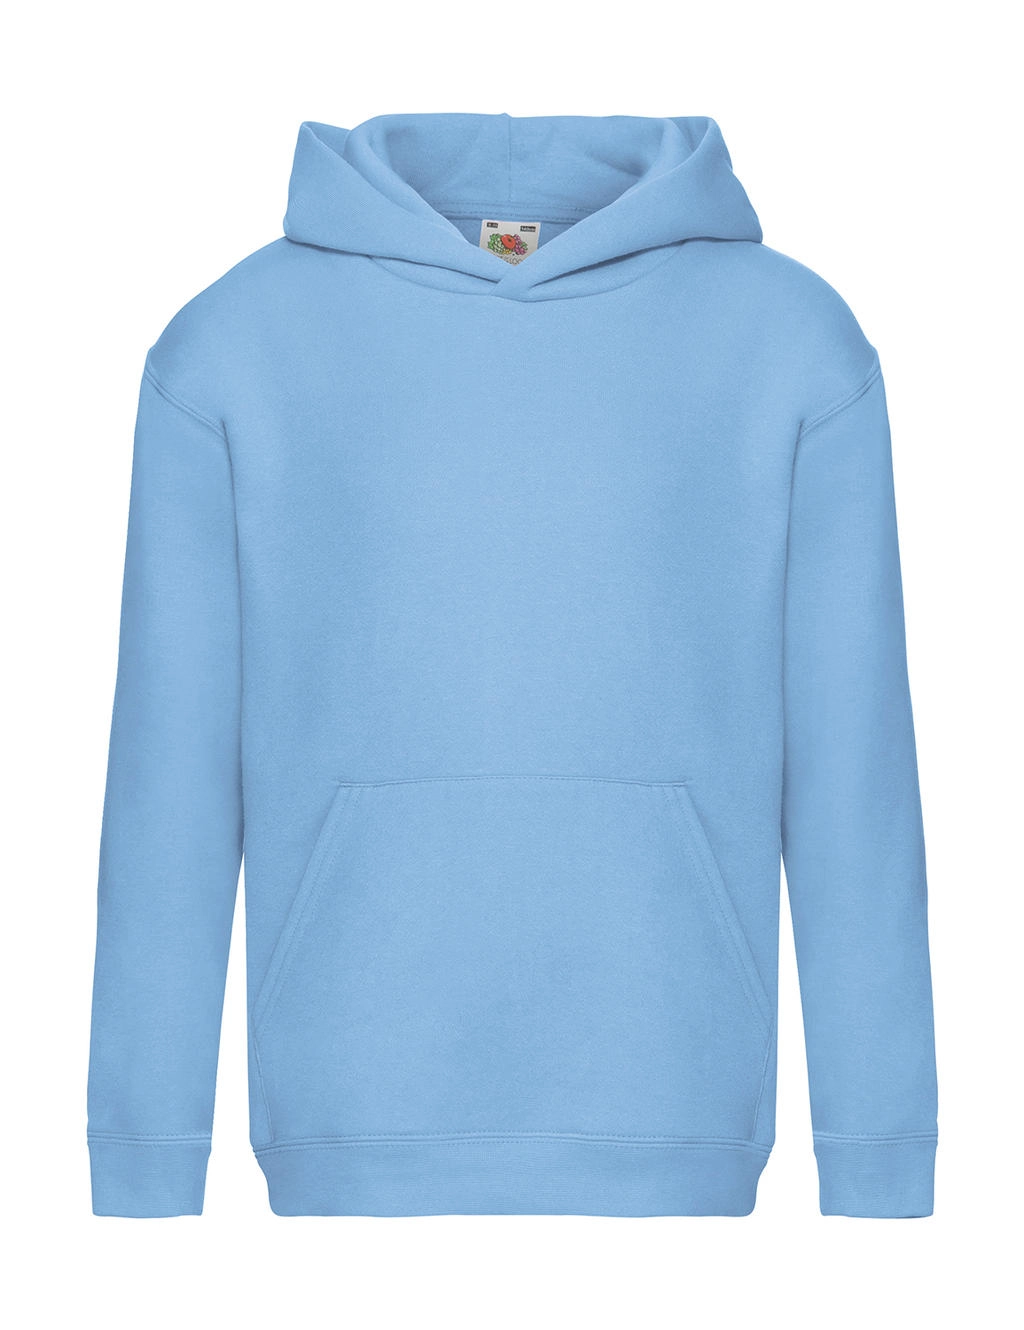 Kids` Premium Hooded Sweat zum Besticken und Bedrucken in der Farbe Sky Blue mit Ihren Logo, Schriftzug oder Motiv.